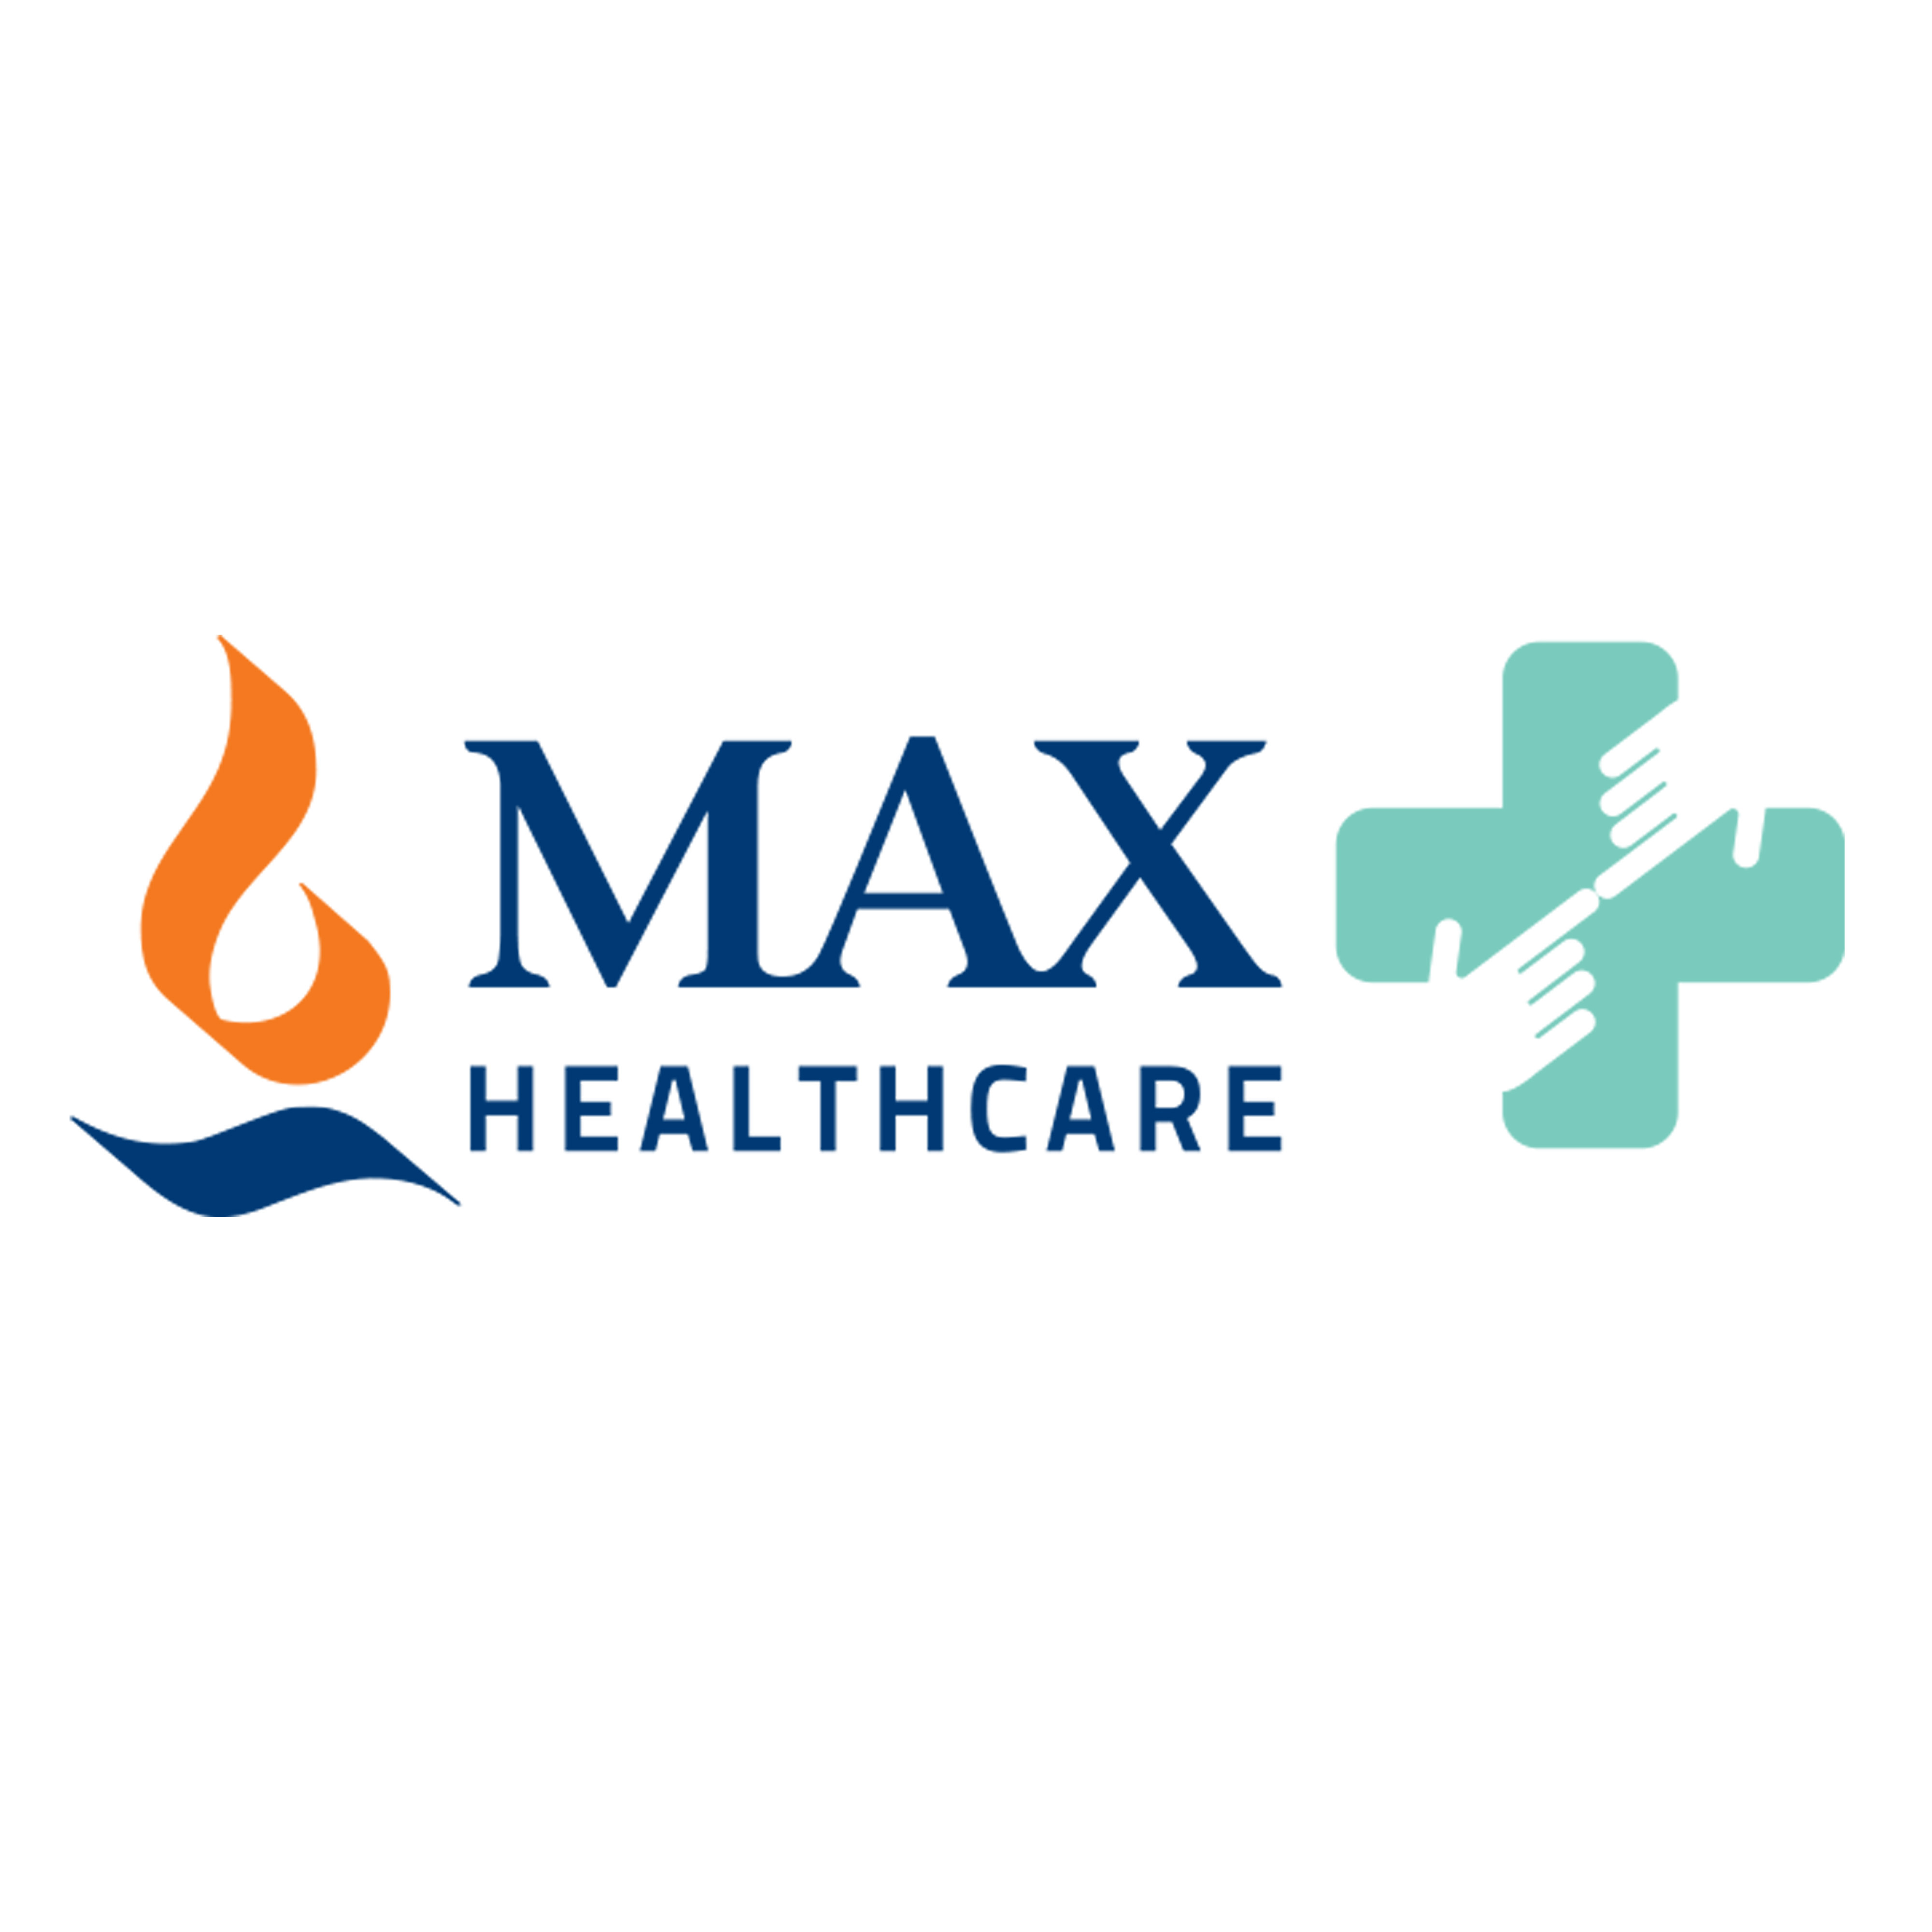 Max Healthcare Institute Ltd